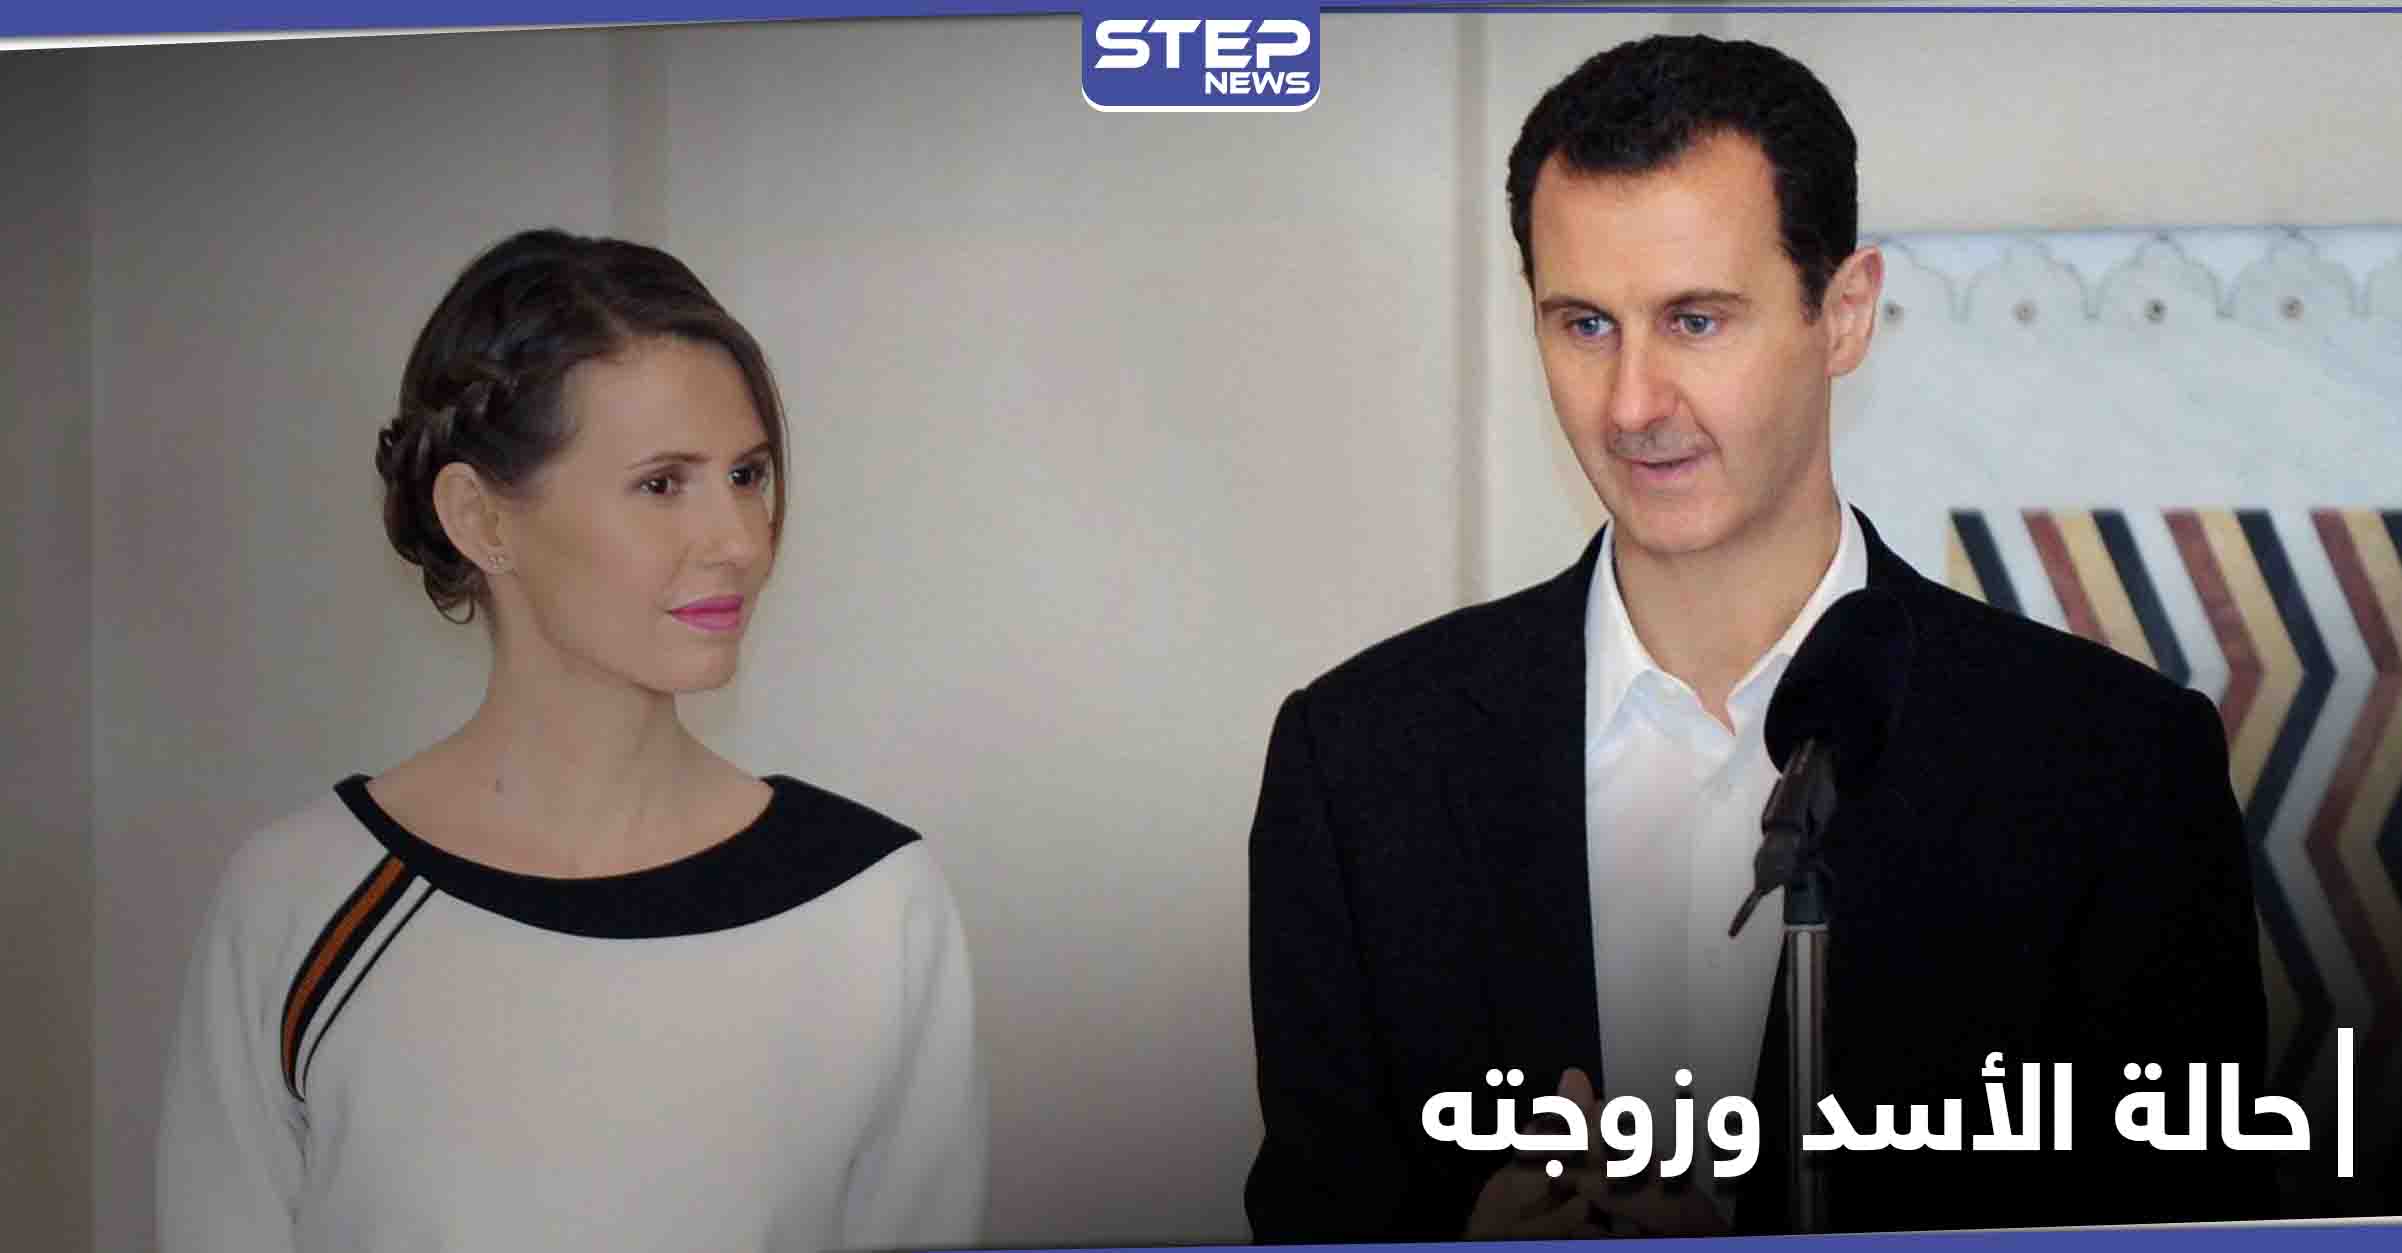 بعد 9 أيام من إصابتهما.. الكشف عن الحالة الصحية لبشار الأسد وزوجته أسماء